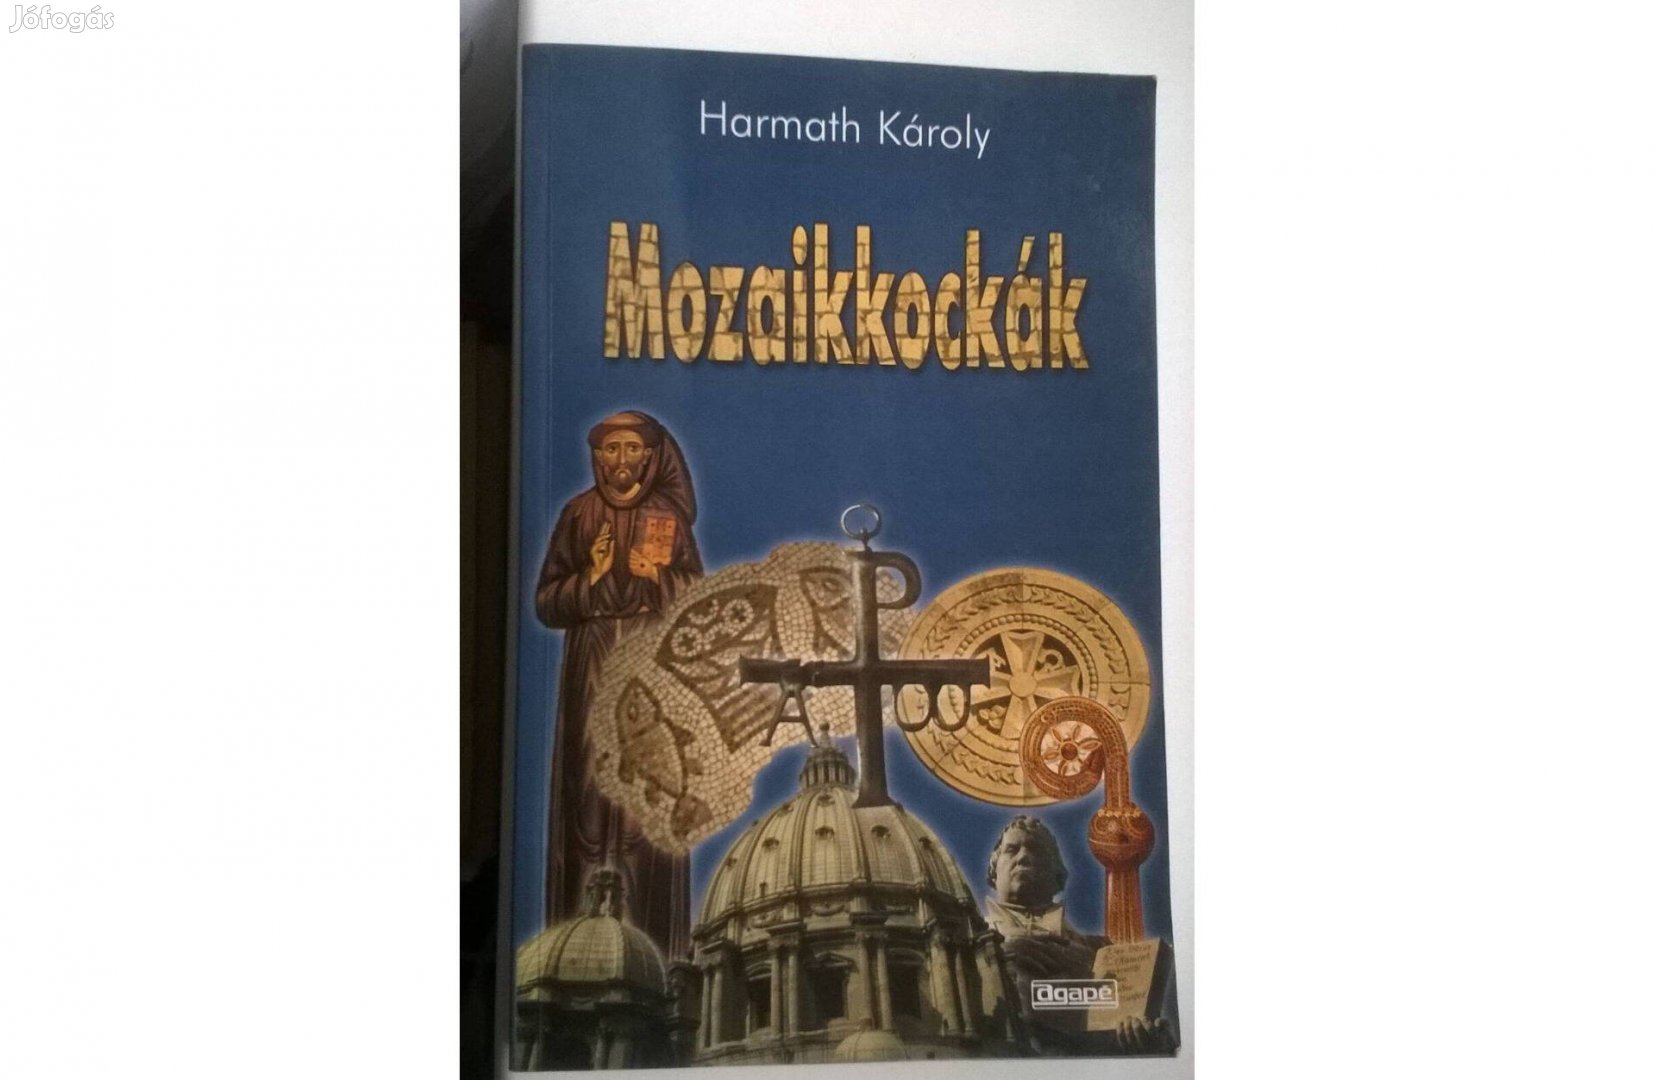 Harmath Károly-Mozaikkockák című könyve , Agapé kiadó 2000